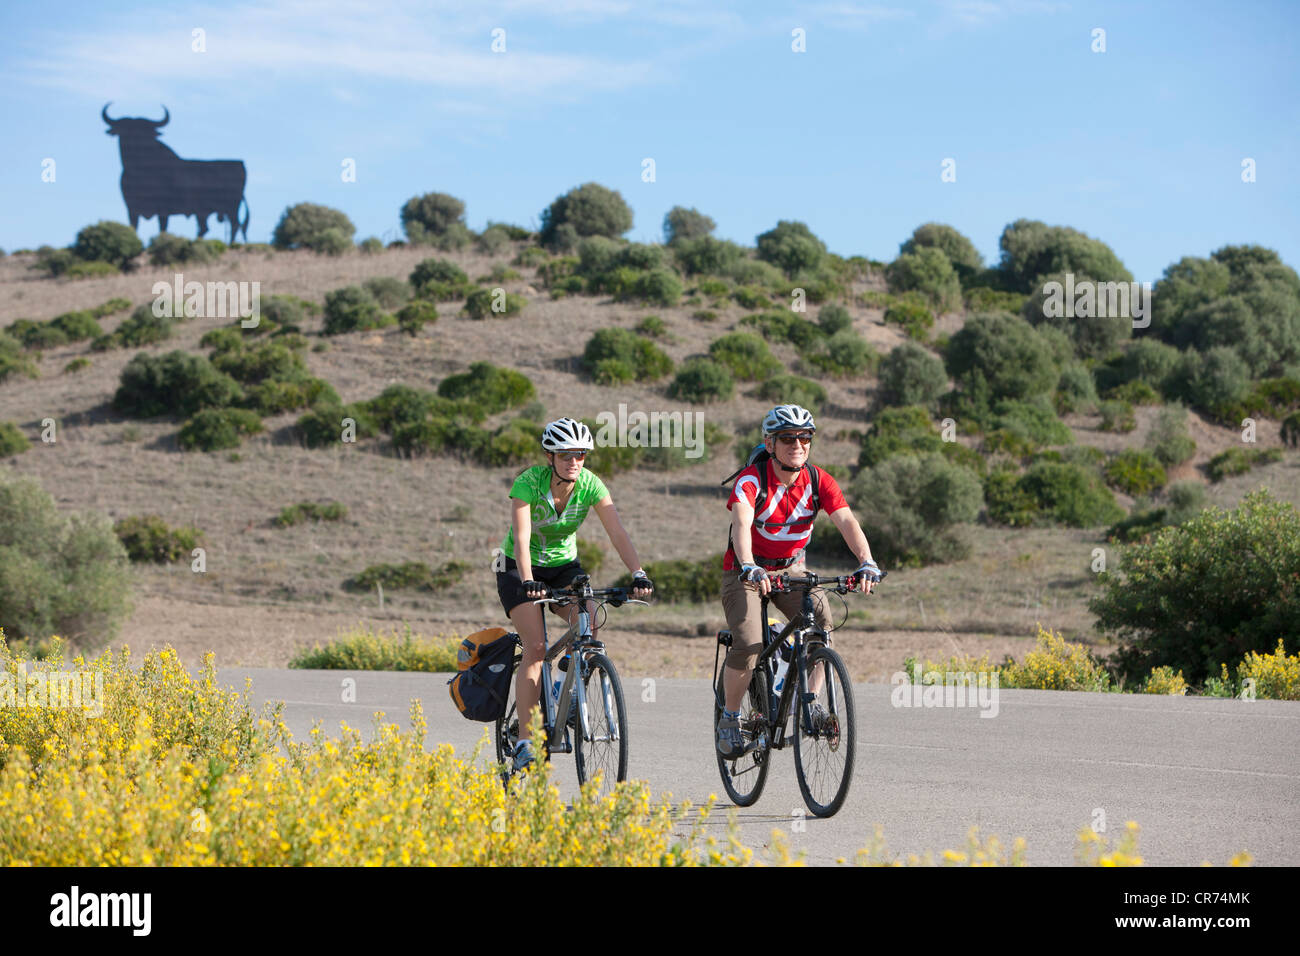 Espagne, Andalousie, man and woman riding bicycle avec bull statue en arrière-plan Banque D'Images